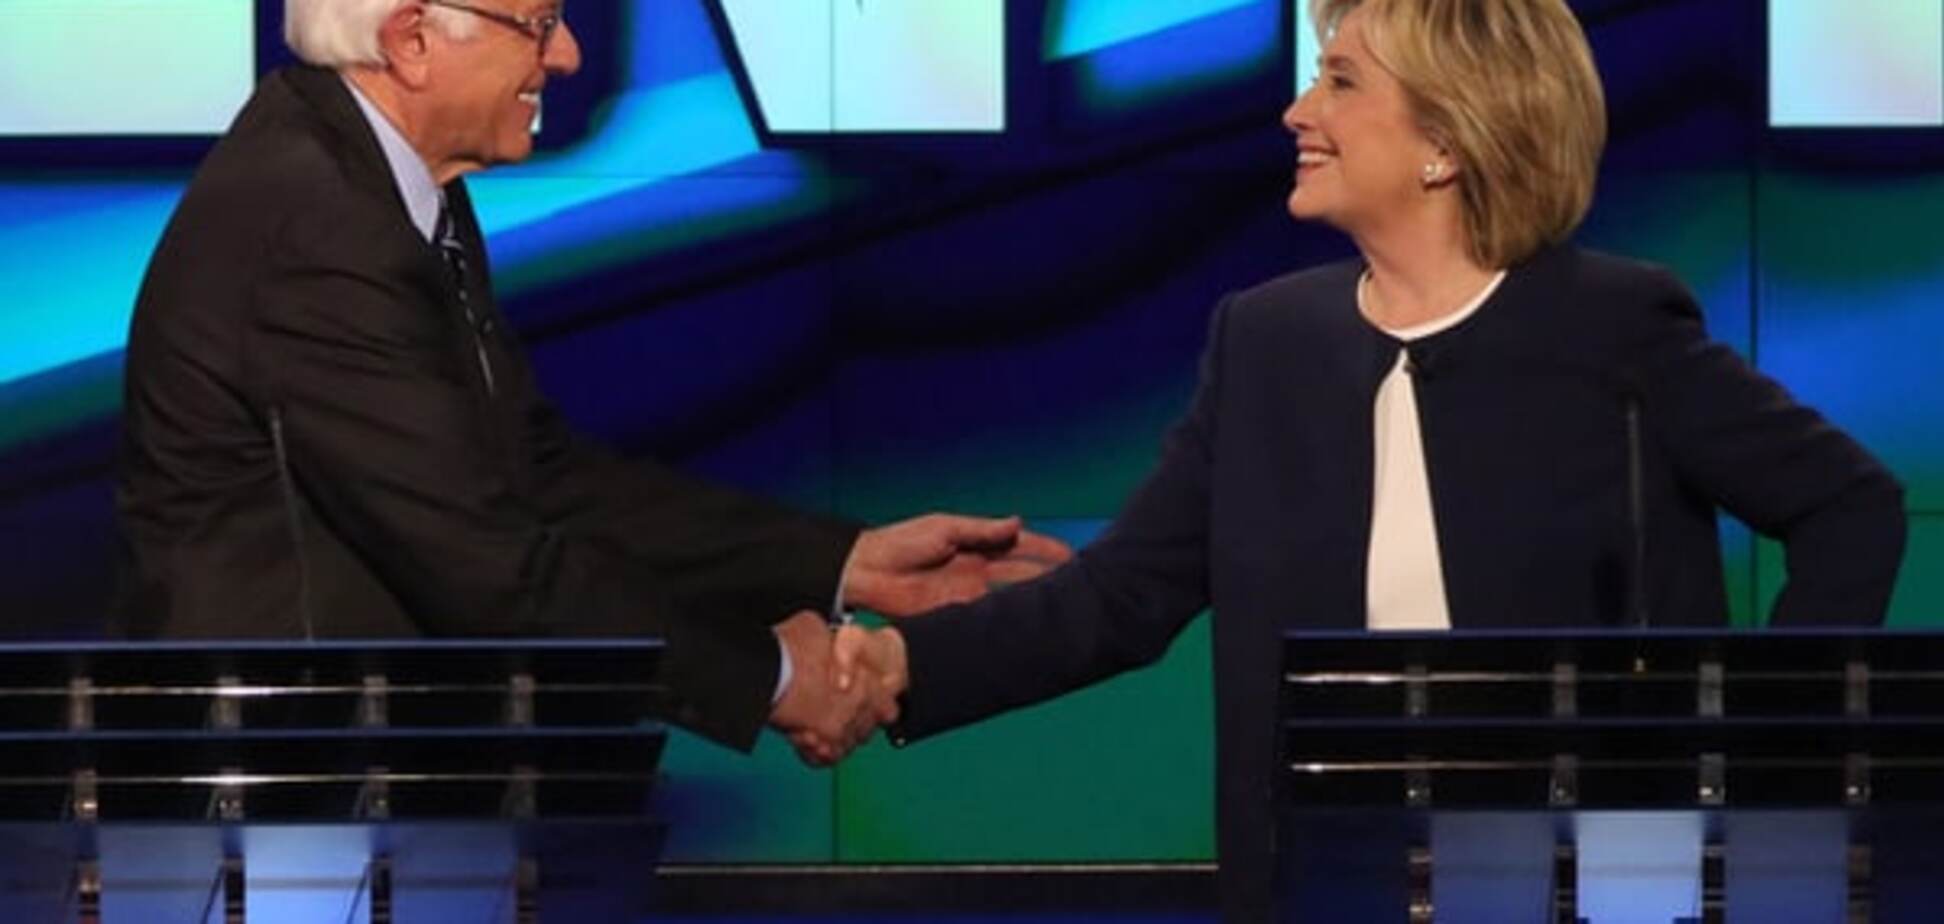 Сравнение демократов: Сандерс играет честно, но Клинтон бьет всех